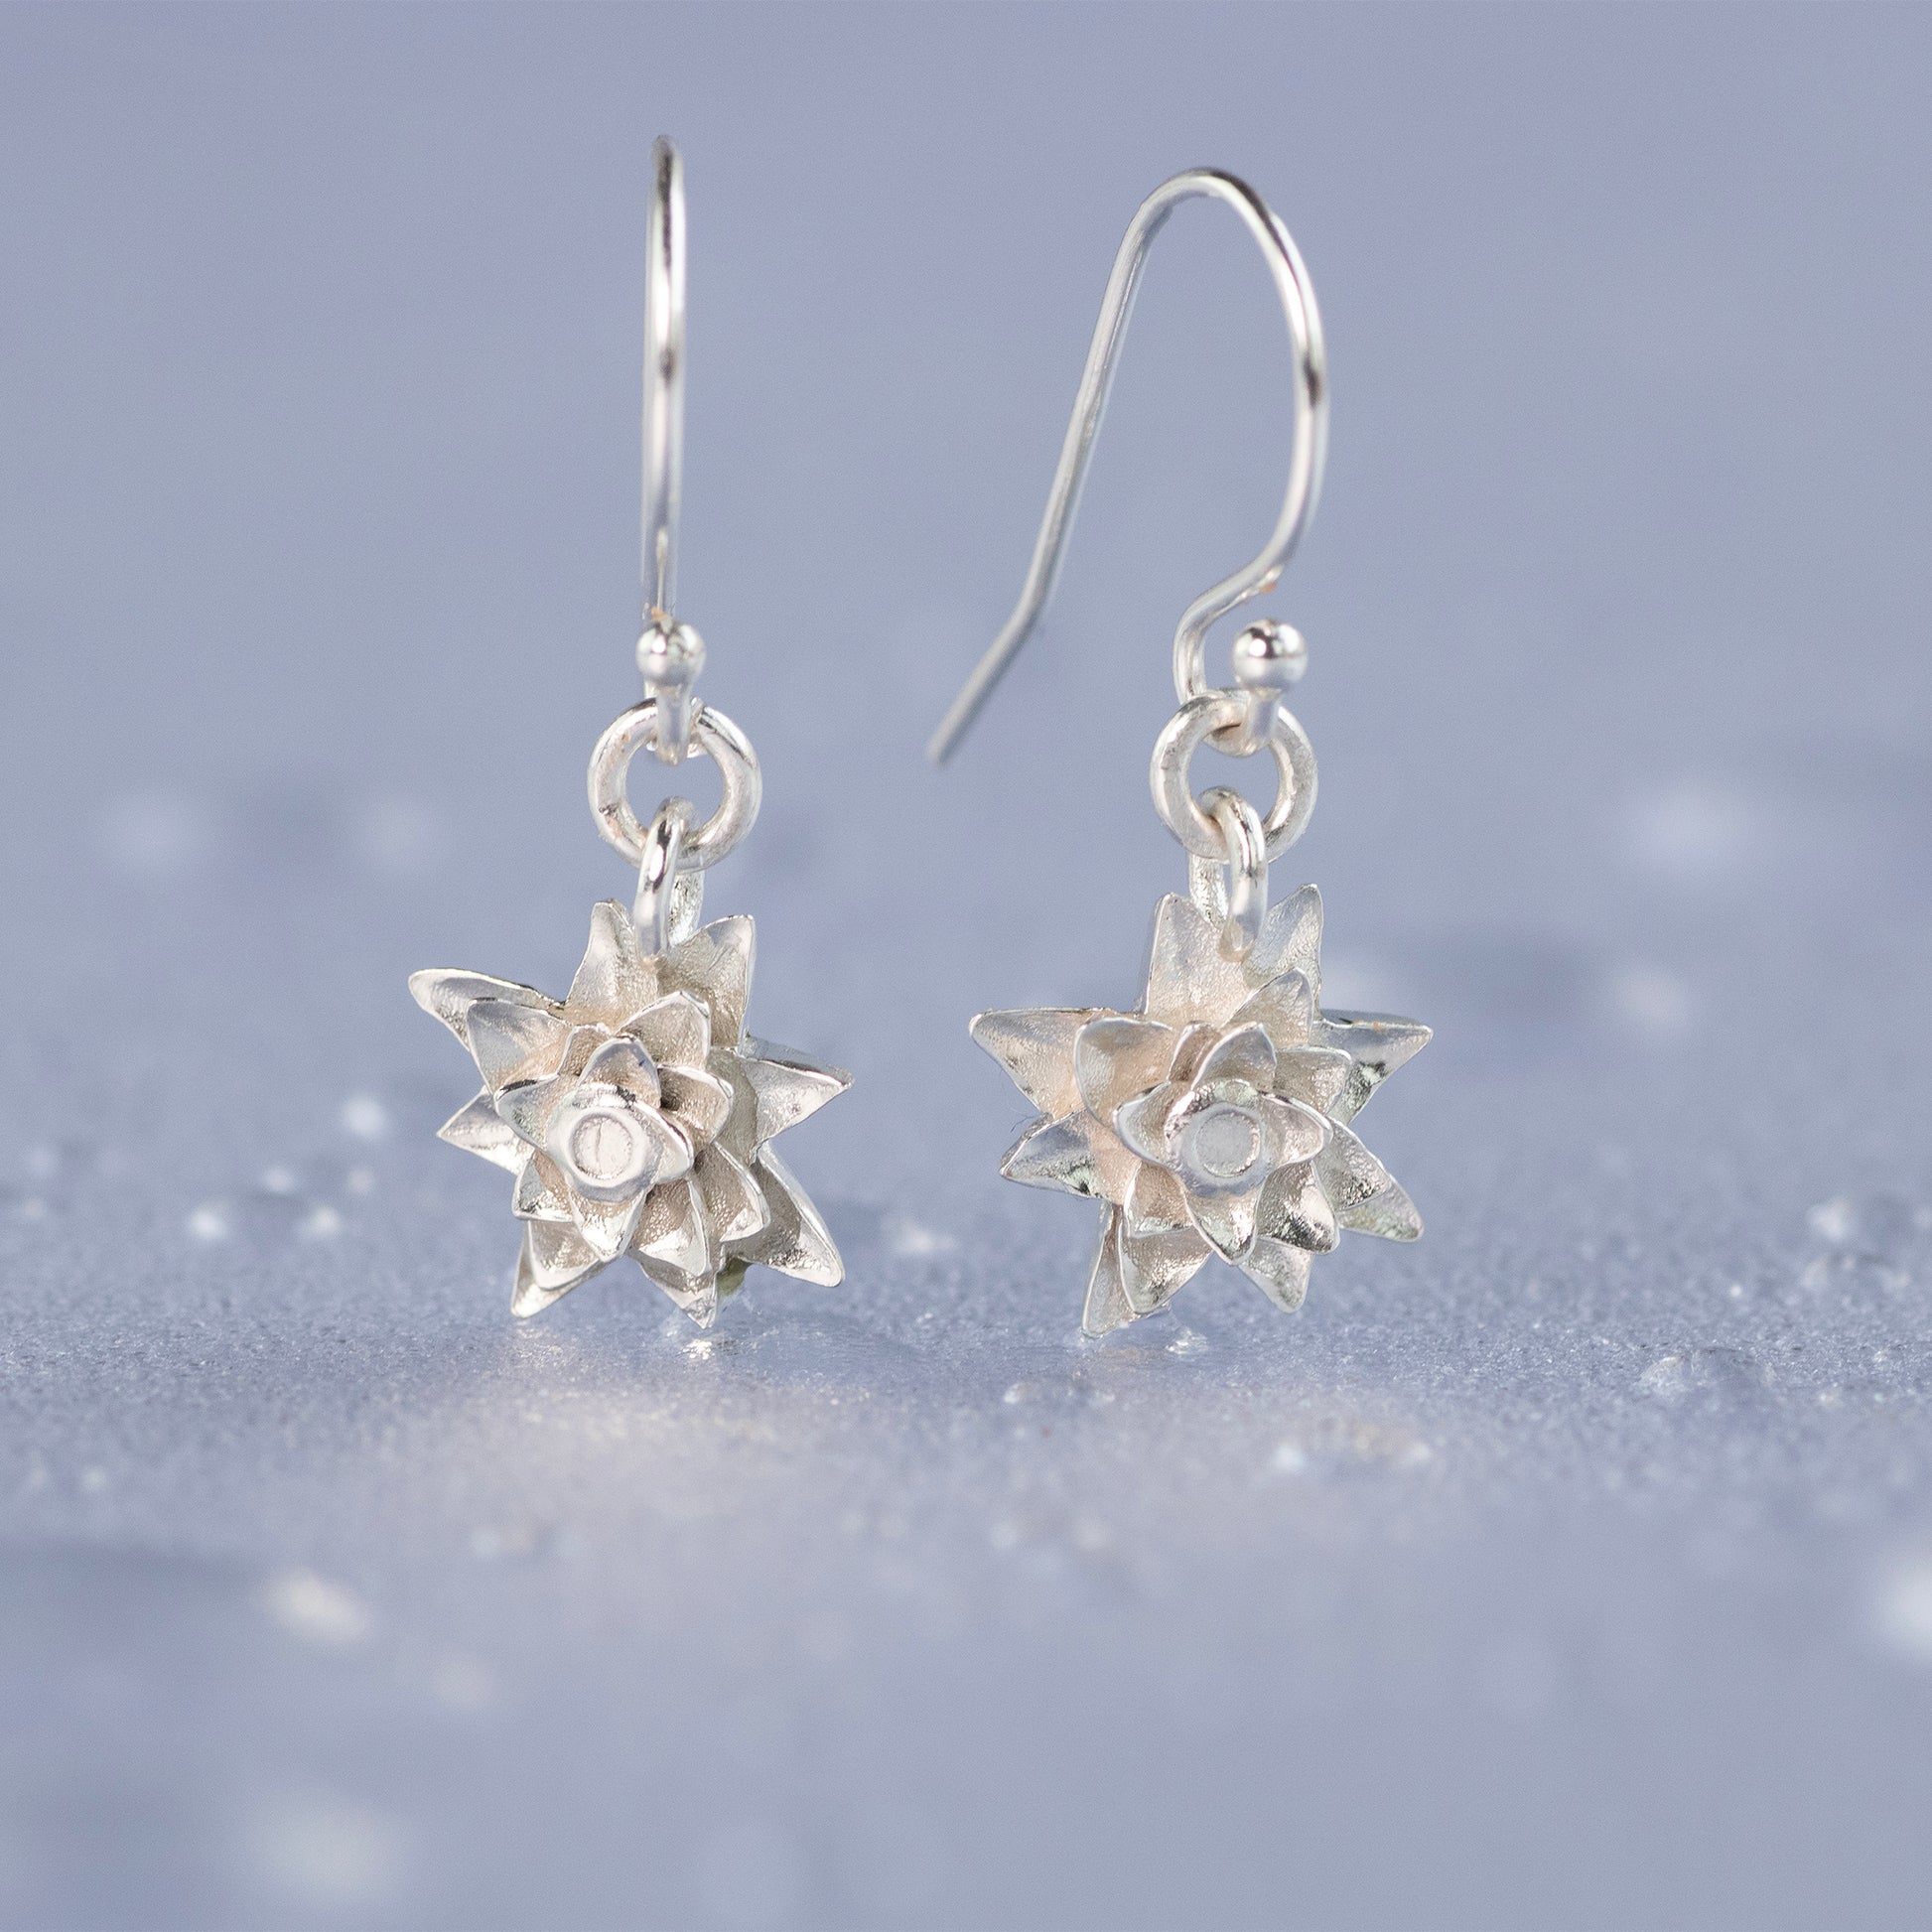 Water lily earrings